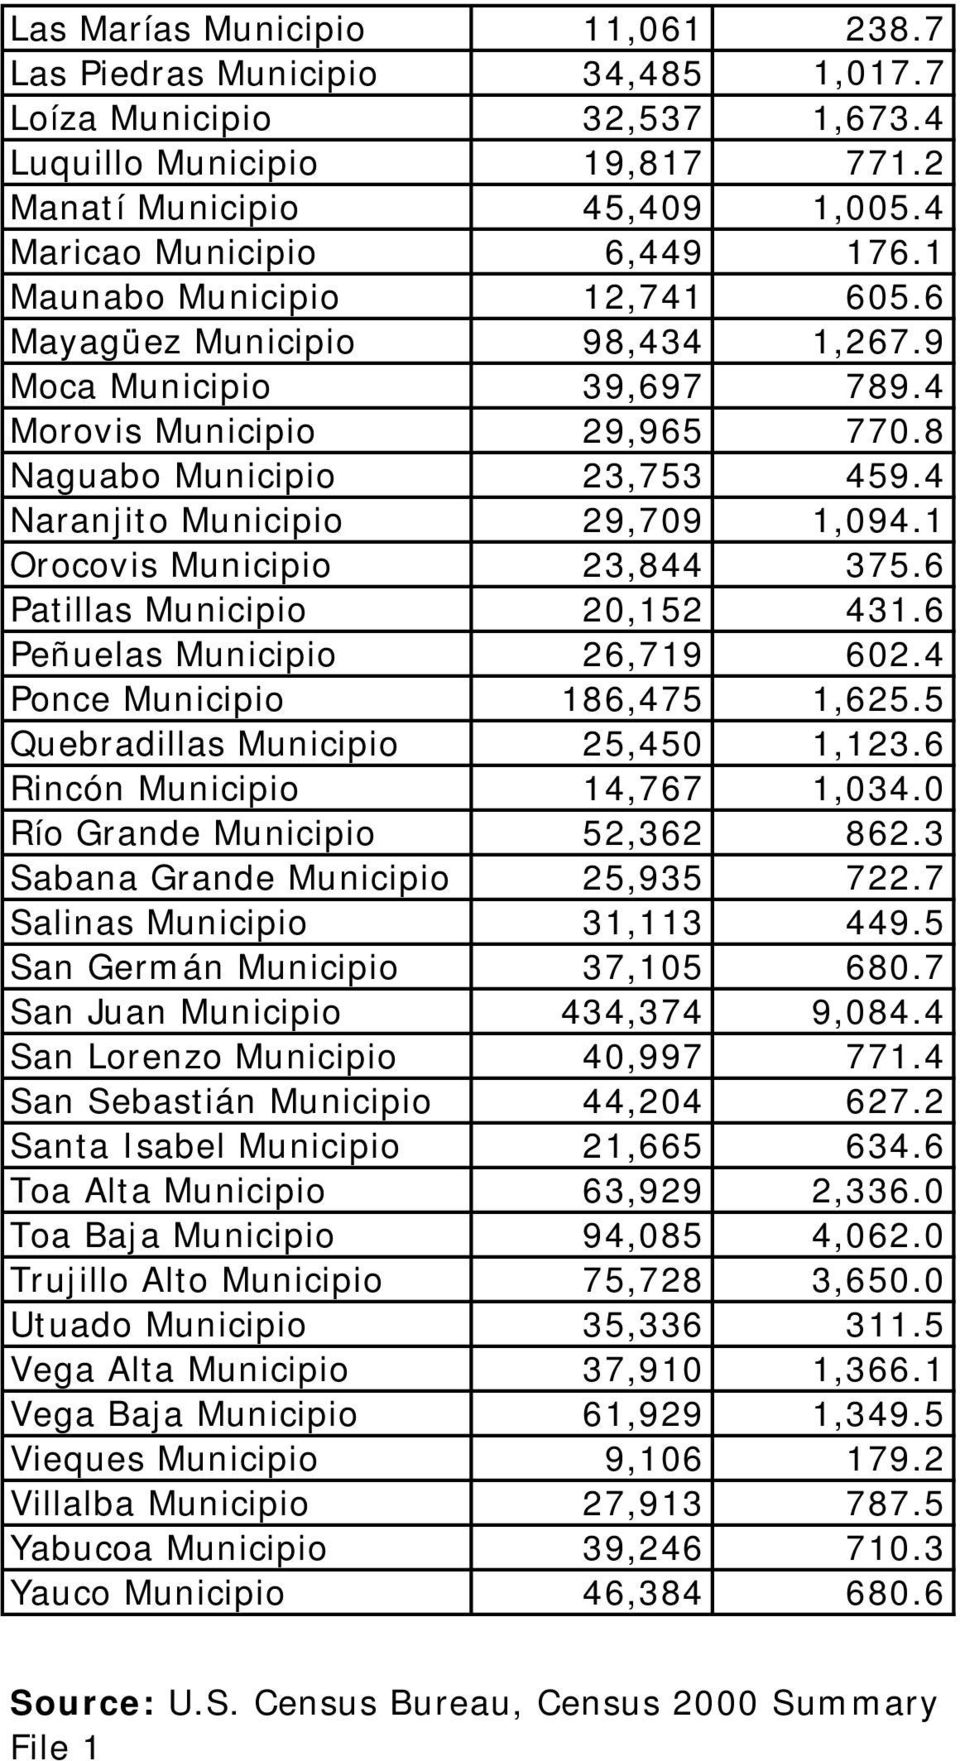 1 Orocovis Municipio 23,844 375.6 Patillas Municipio 20,152 431.6 Peñuelas Municipio 26,719 602.4 Ponce Municipio 186,475 1,625.5 Quebradillas Municipio 25,450 1,123.6 Rincón Municipio 14,767 1,034.